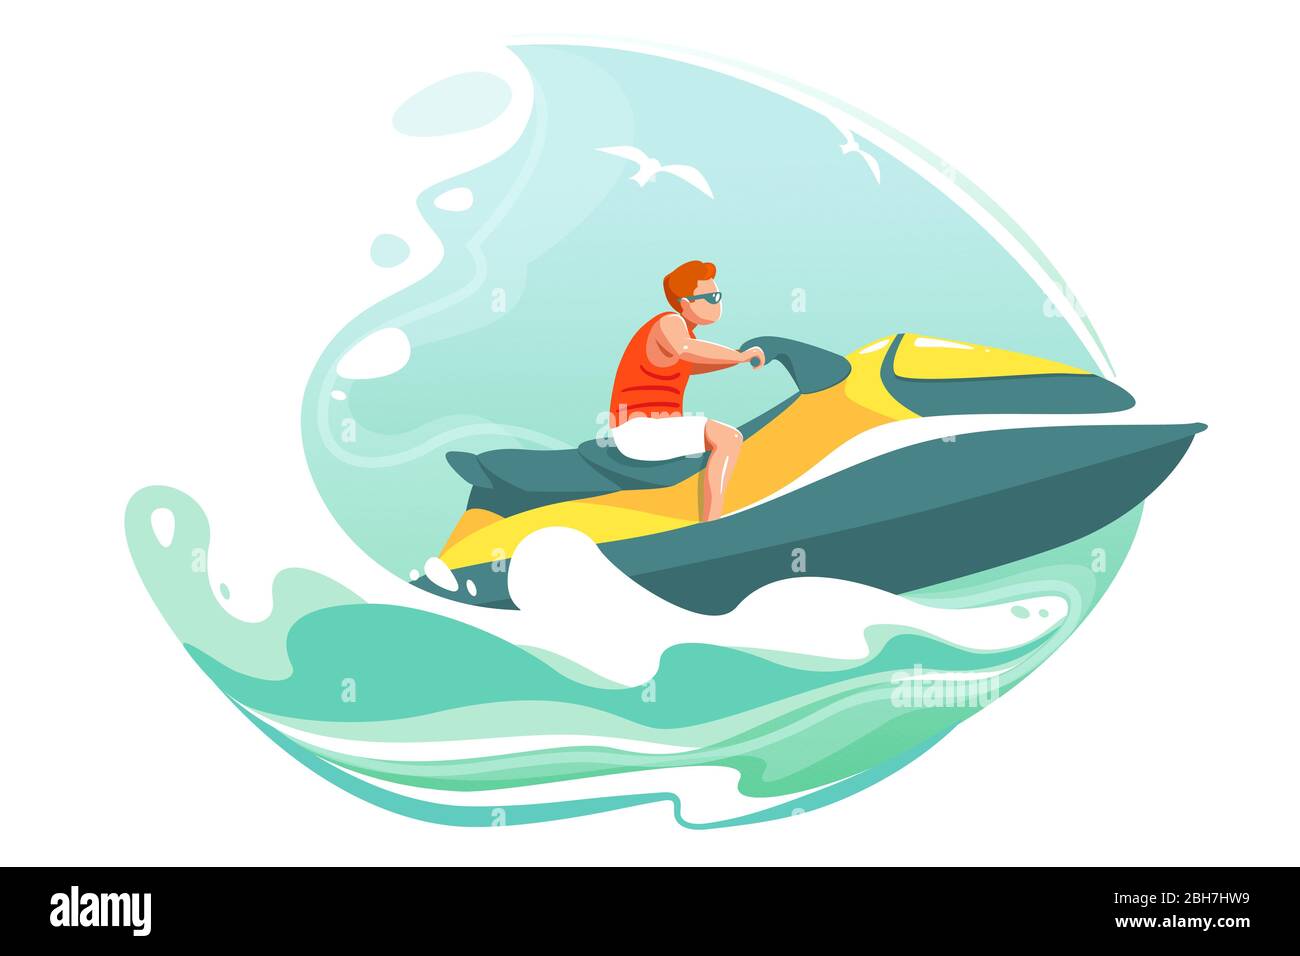 Man Ride Jetski im Meer Vektor Poster. Aquabike auf Meereswellen Illustration. Sommer Cartoon Landschaft mit Charakter in Sonnenbrille auf Wasser Roller. Banner für extremen Wassersport. Wave isolierter Hintergrund. Stock Vektor